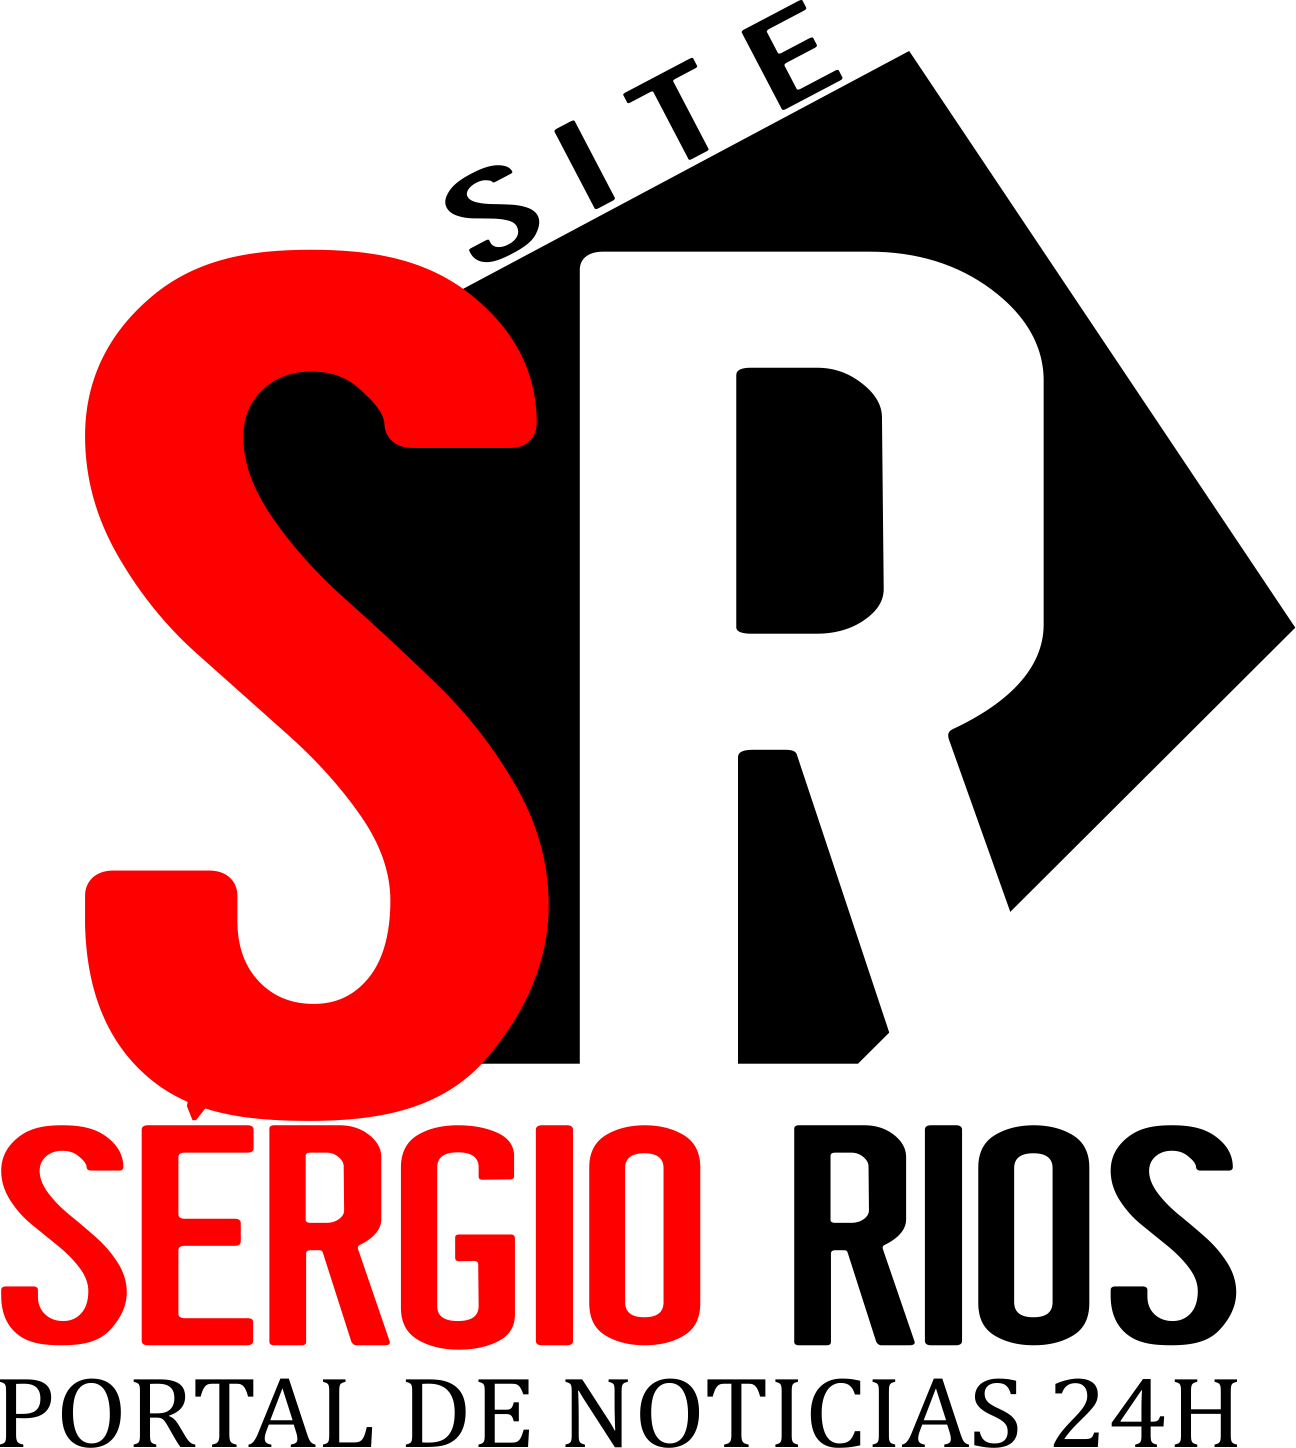 Sérgio Rios